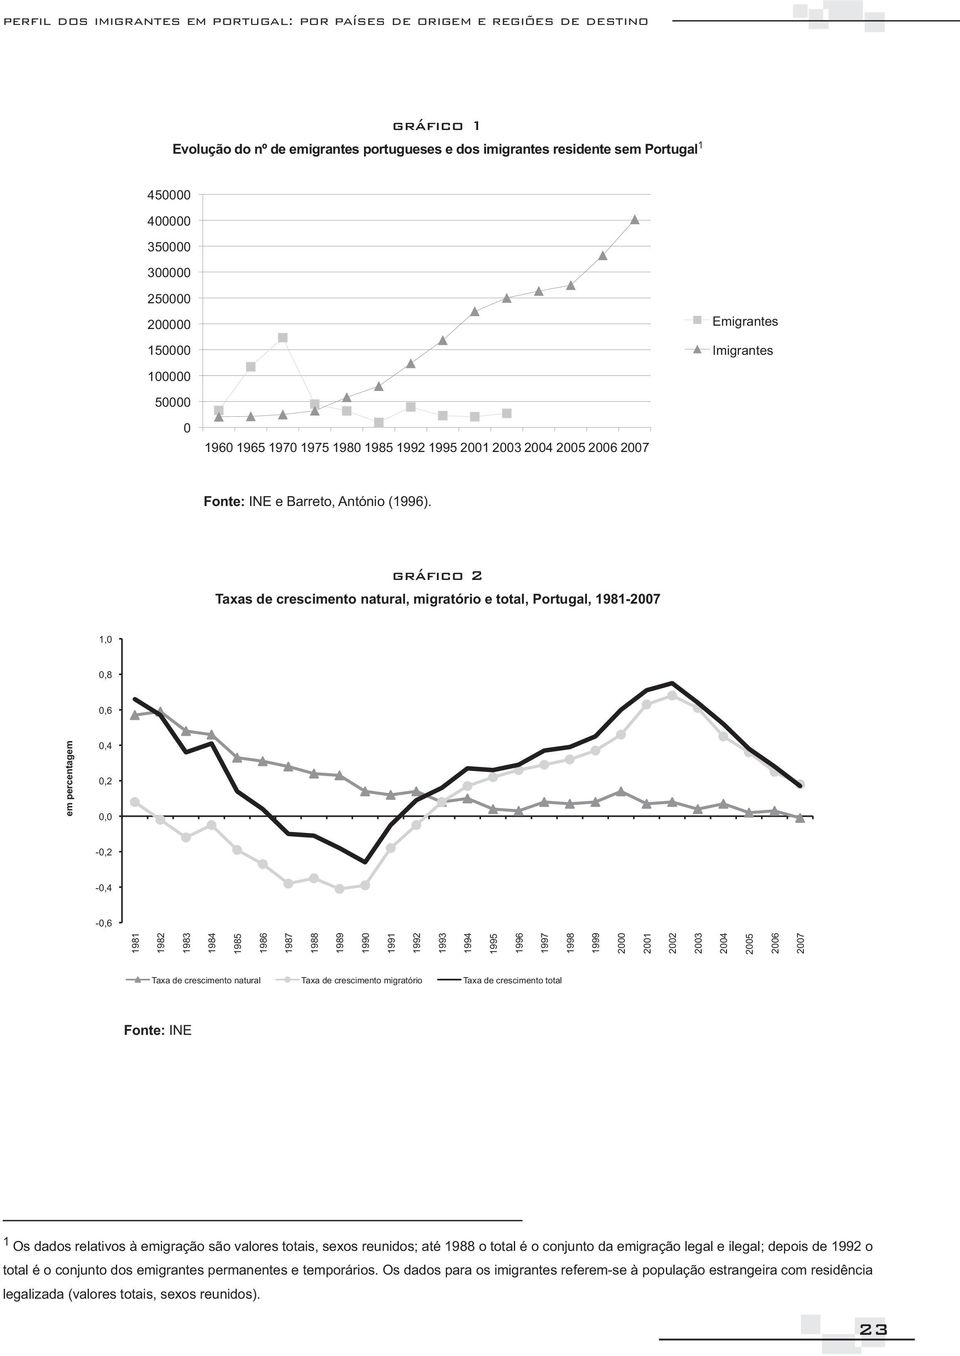 Taxas de crescimento natural, migratório e total, Portugal, 1981-2007 1,0 0,8 0,6 0,4 0,2 0,0-0,2-0,4-0,6 1981 1982 1983 1984 em percentagem 1985 1986 1987 1988 1989 1990